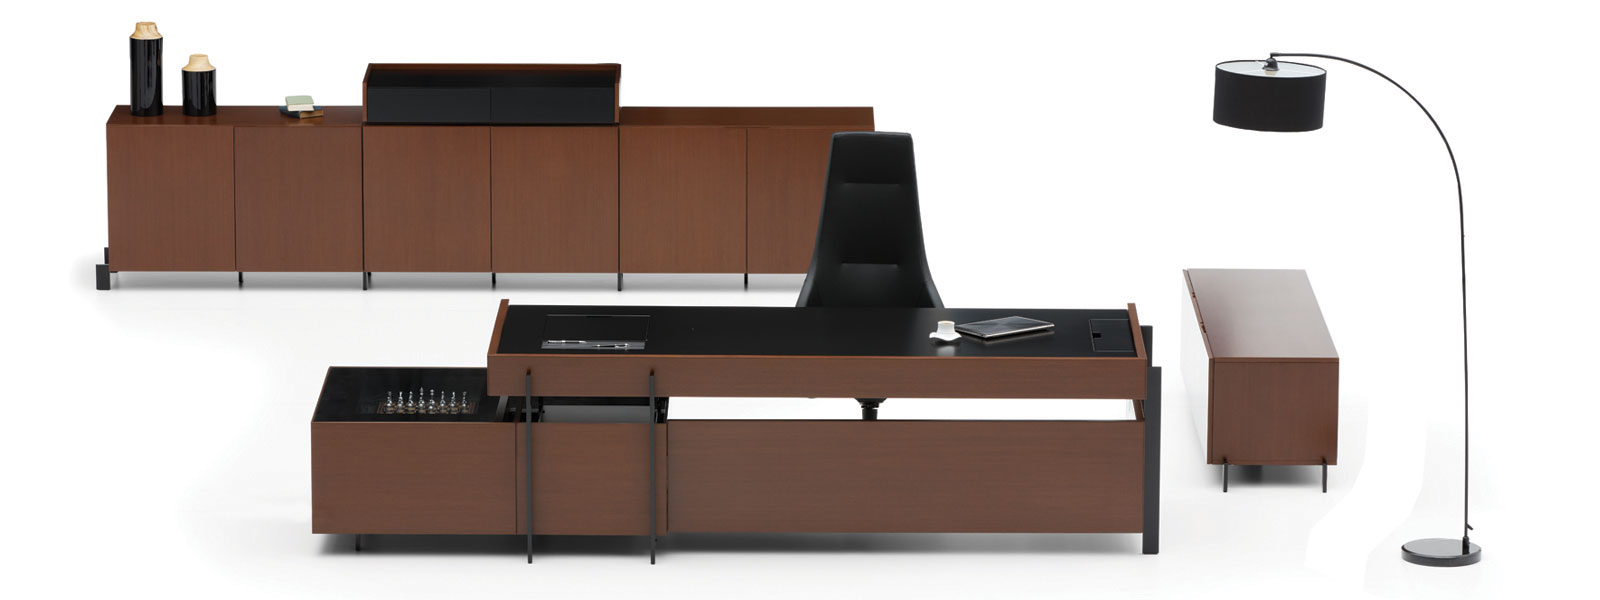 Bürotime modern ofis mobilyaları